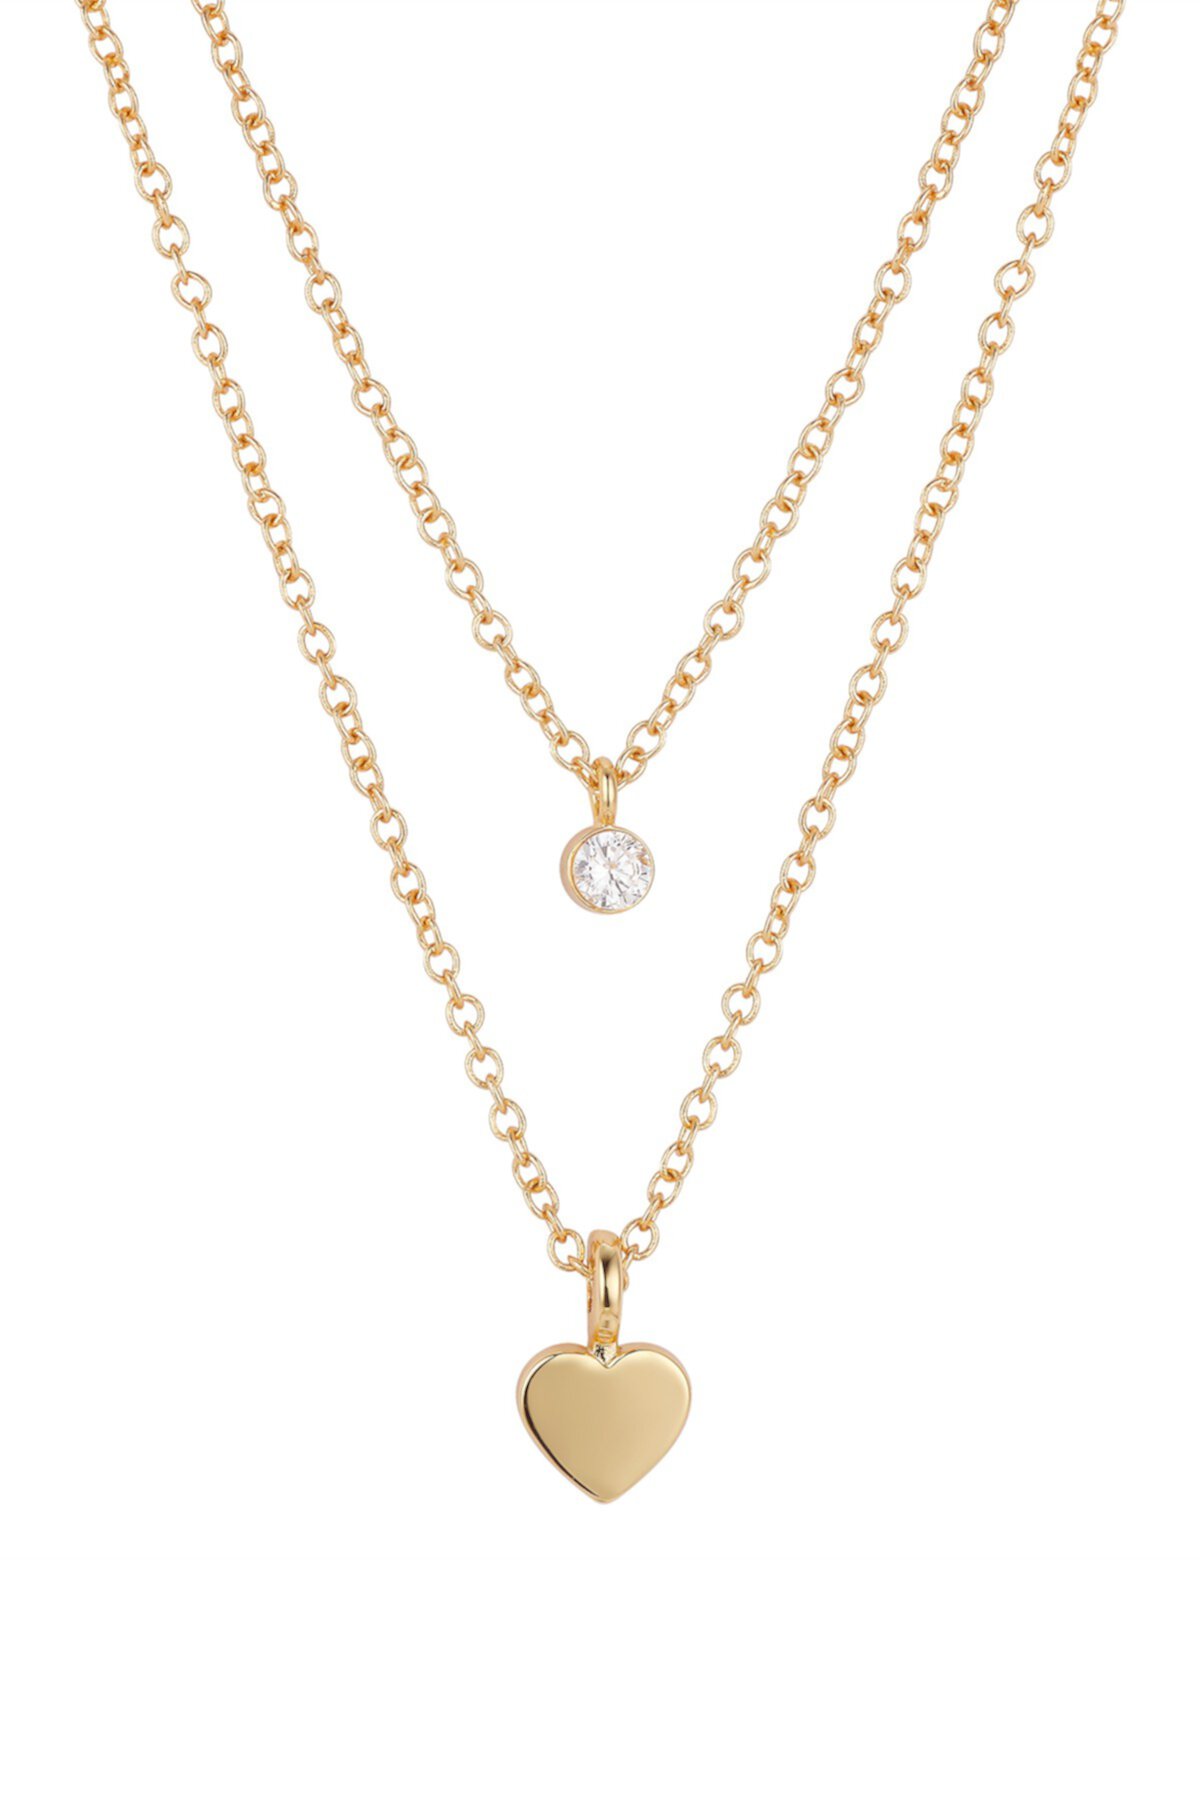 Комплект ожерелья с подвеской CZ и подвеской в форме сердца LA Rocks